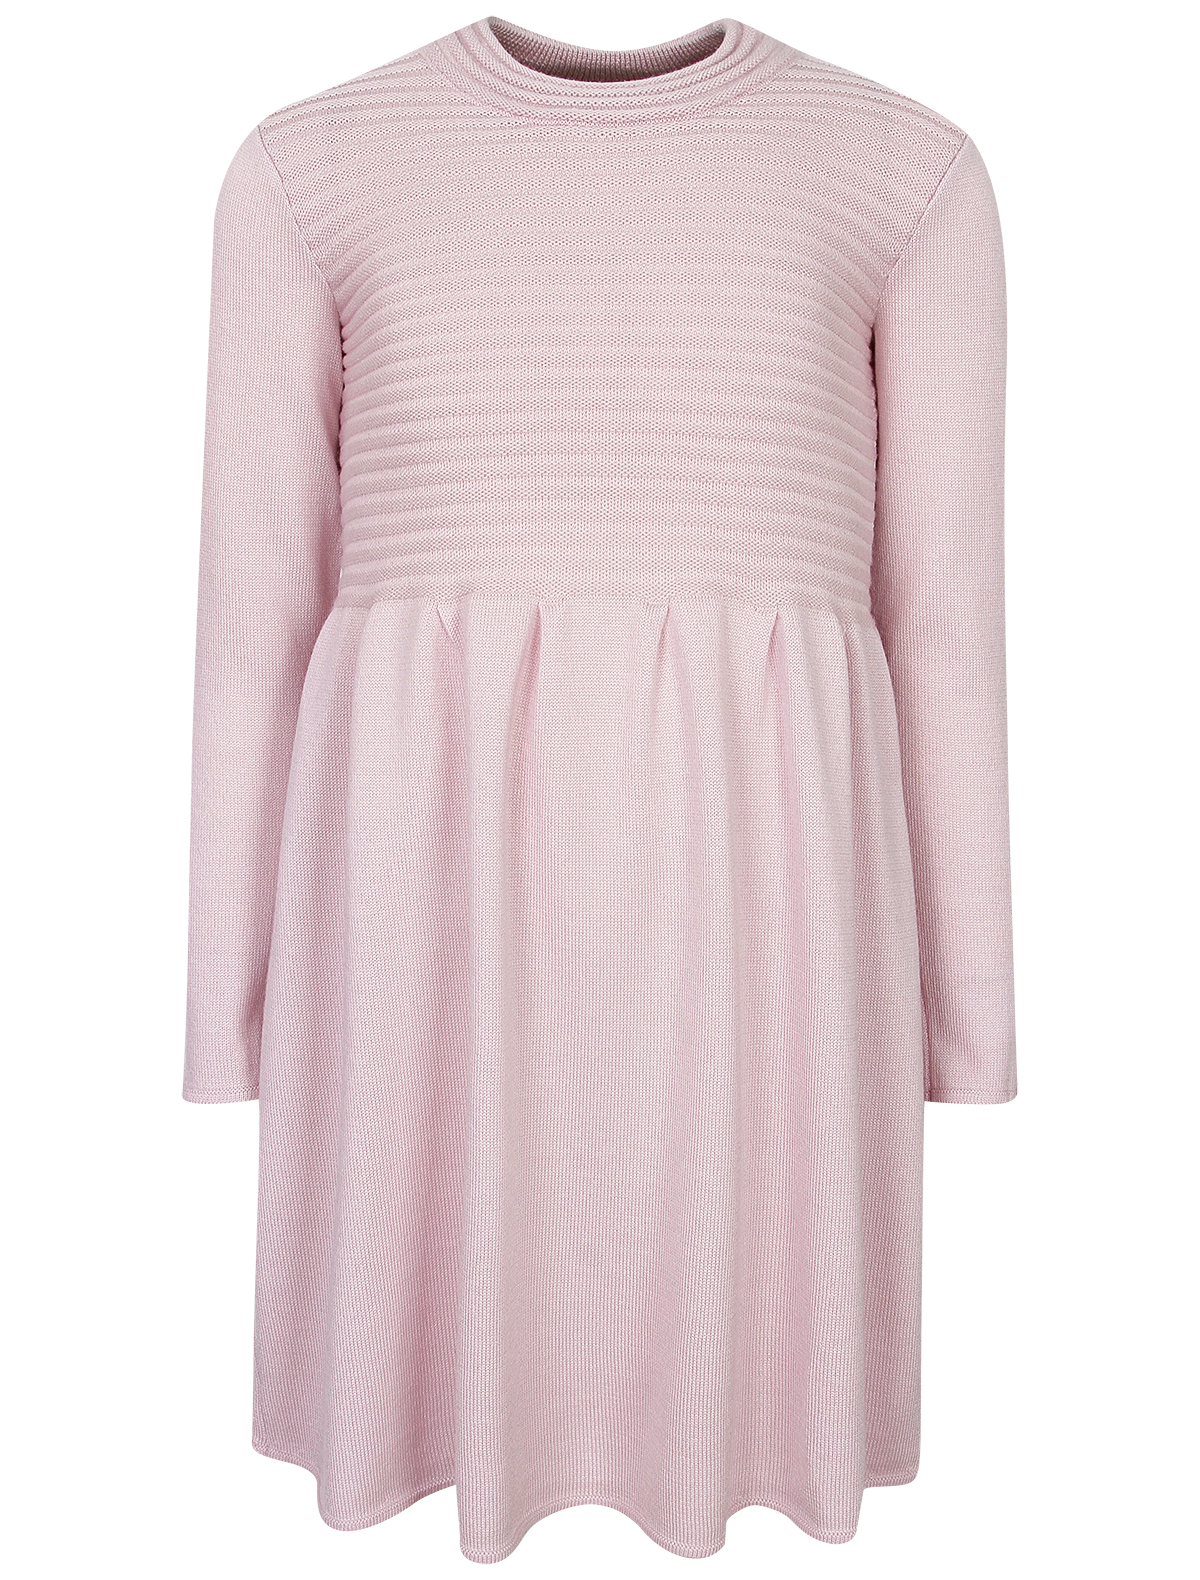 Платье Jacote розового цвета